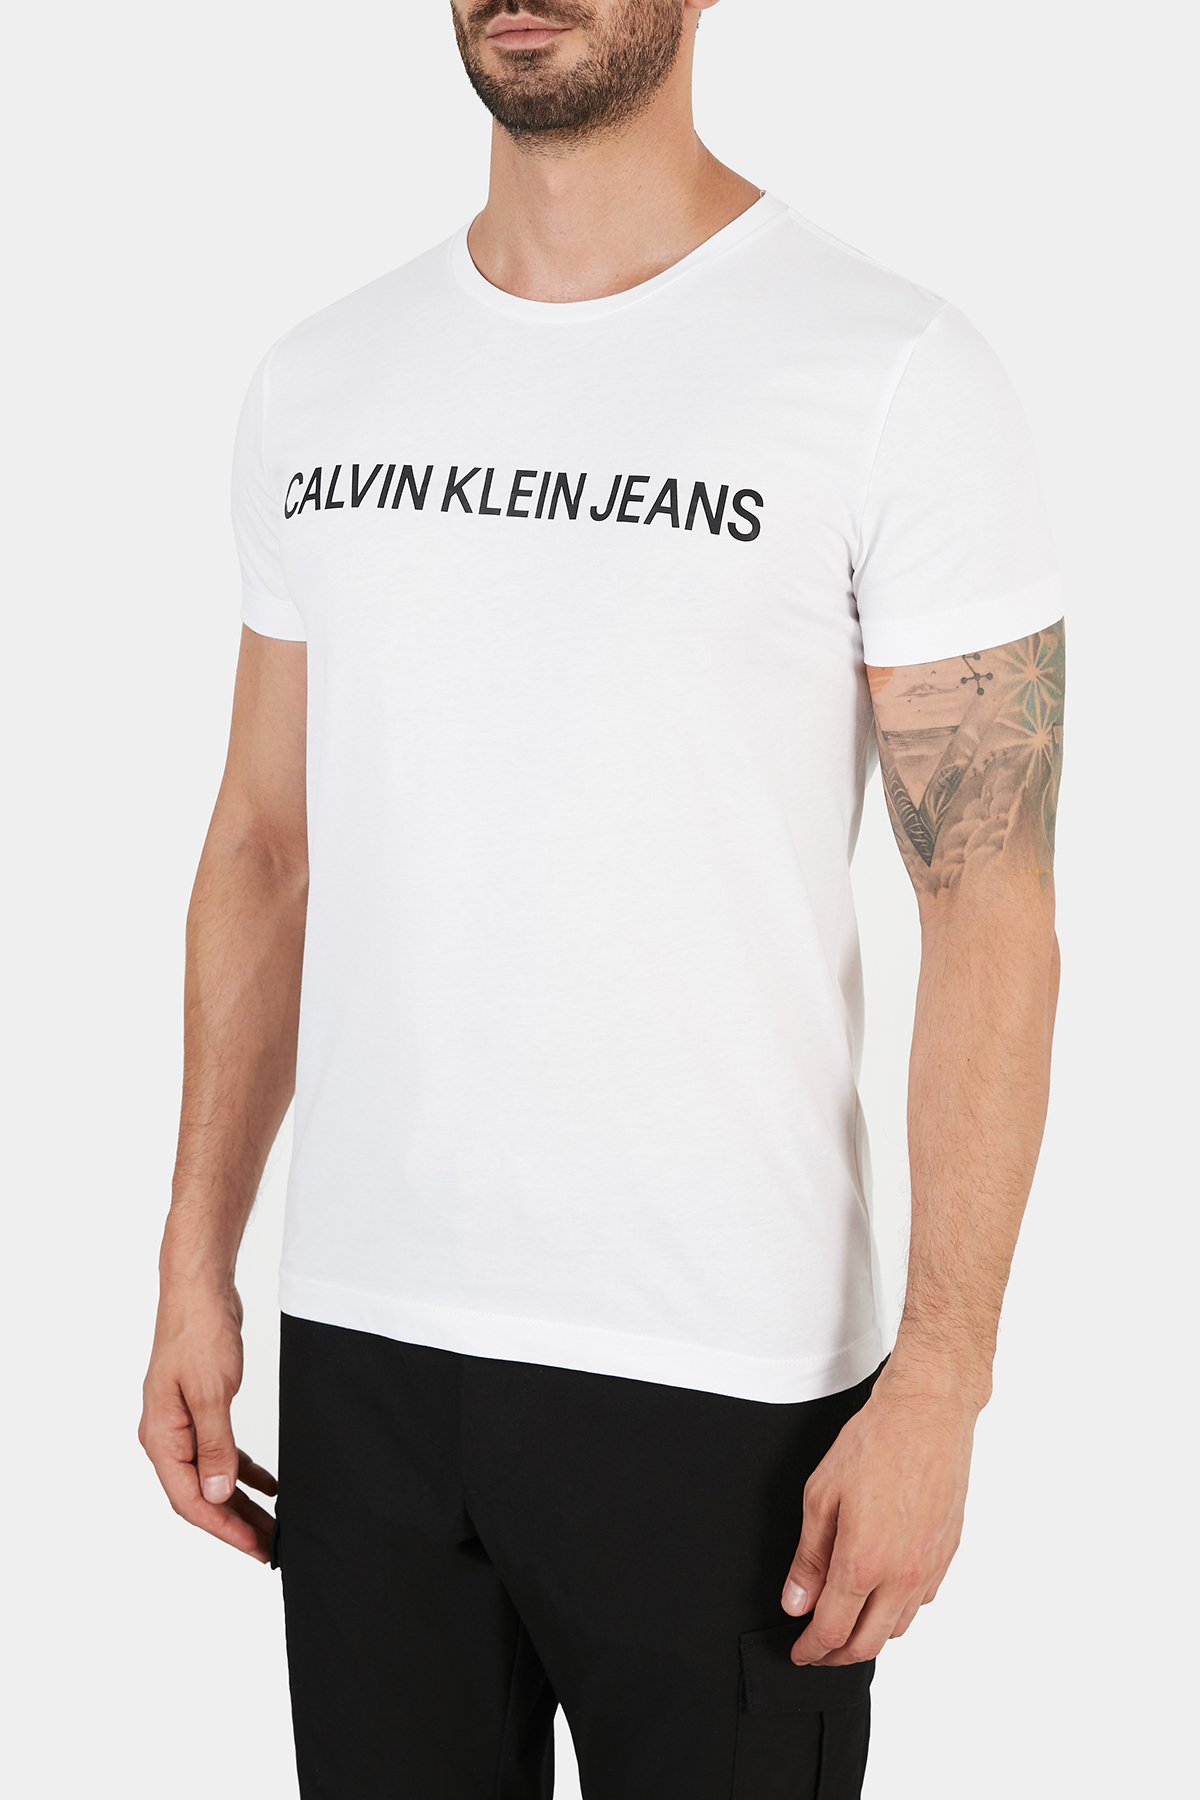 Calvin Klein % 100 Organik Pamuklu Slim Fit Bisiklet Yaka Erkek T Shirt J30J307855 112 BEYAZ